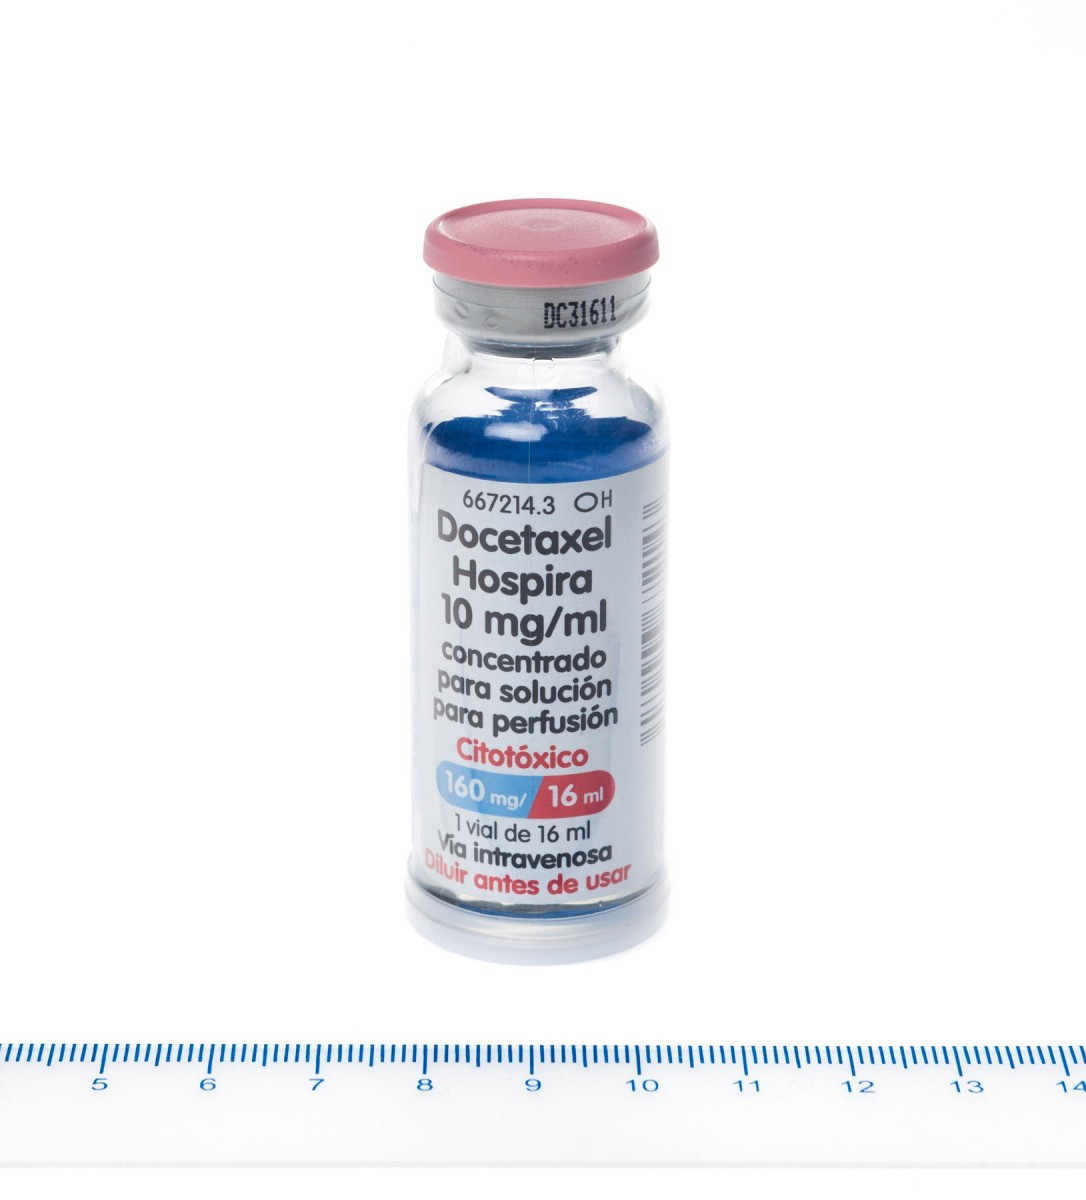 DOCETAXEL HOSPIRA 10 mg/ml CONCENTRADO PARA SOLUCION PARA PERFUSION, 1 vial de 2 ml fotografía de la forma farmacéutica.